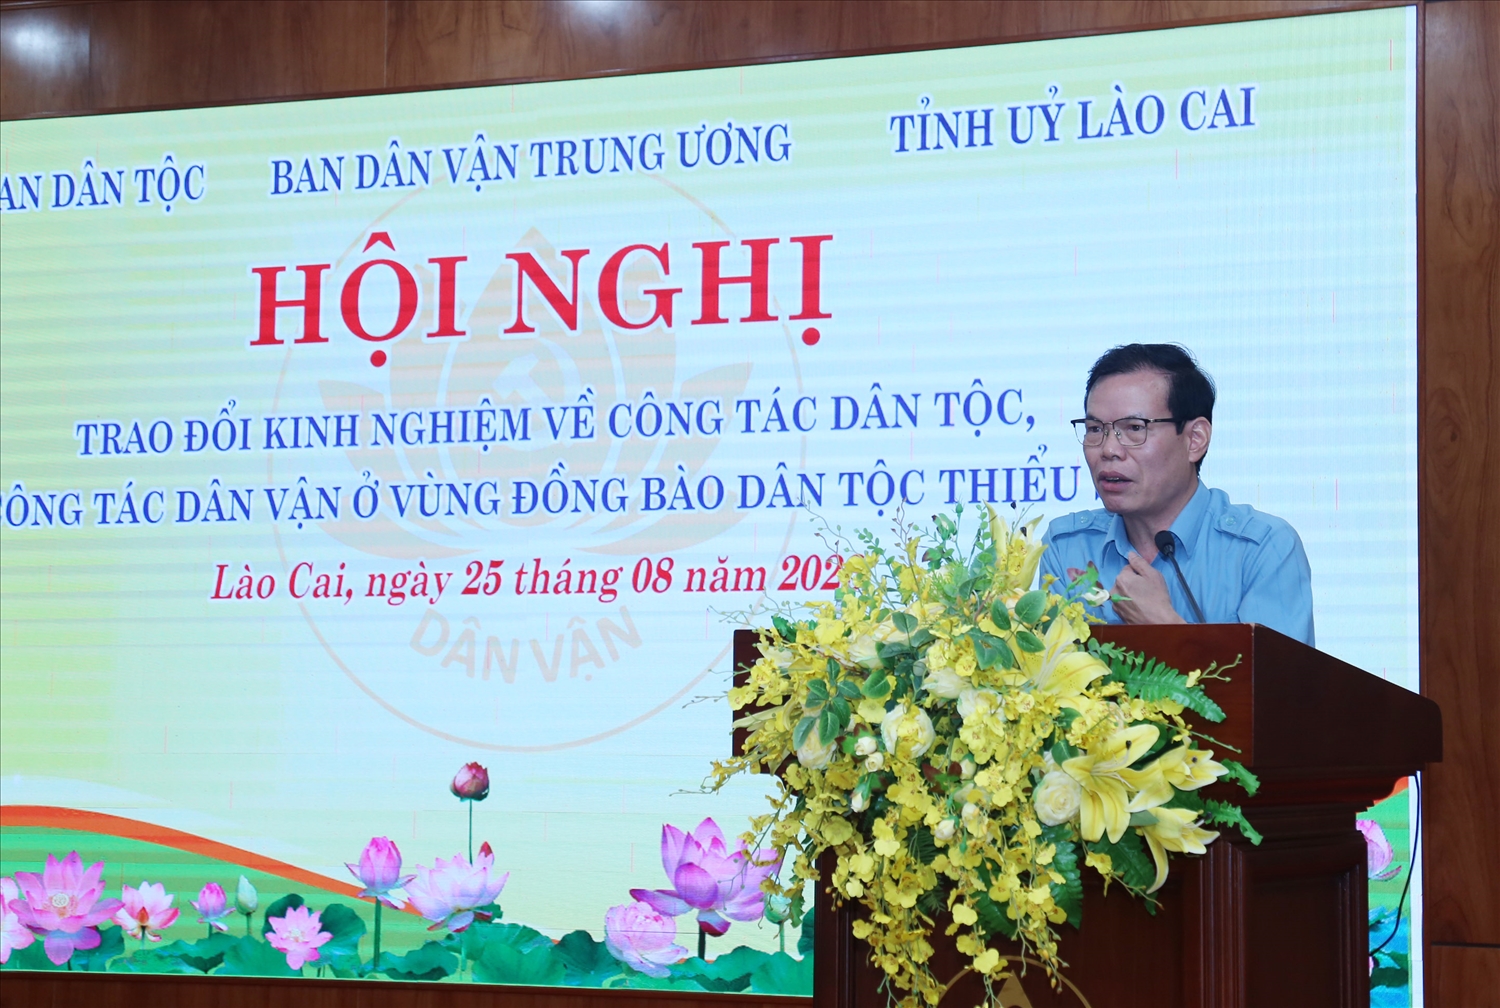 Phó Trưởng Ban Dân vận Trung ương Triệu tài Vinh phát biểu tại Hội nghị